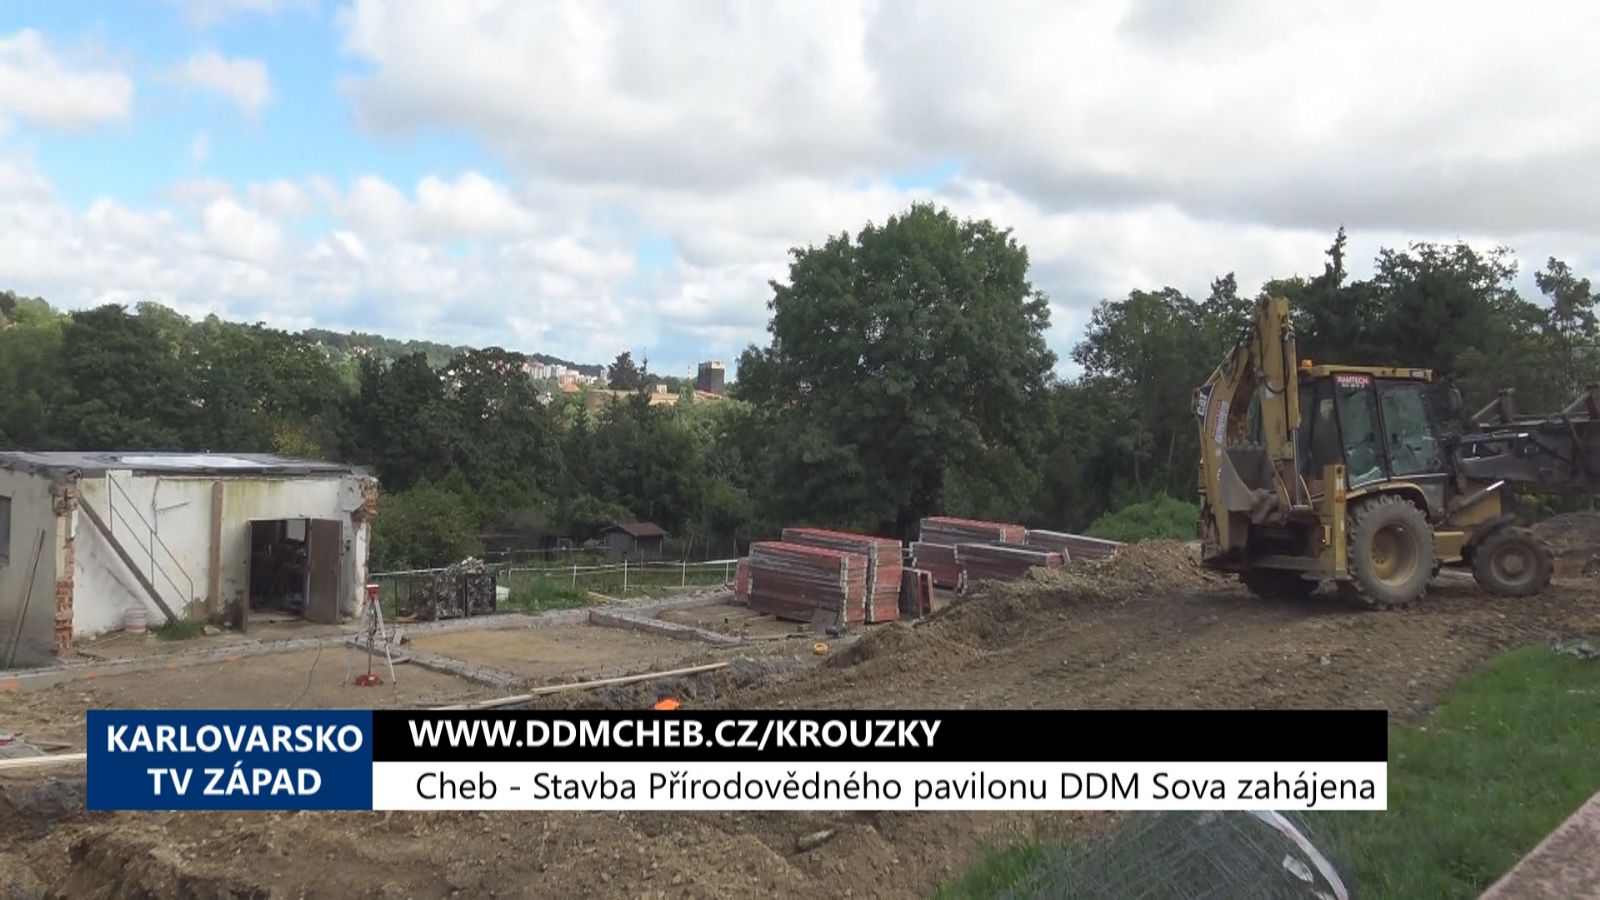 Cheb: Stavba přírodovědného pavilonu v DDM Sova zahájena (TV Západ)